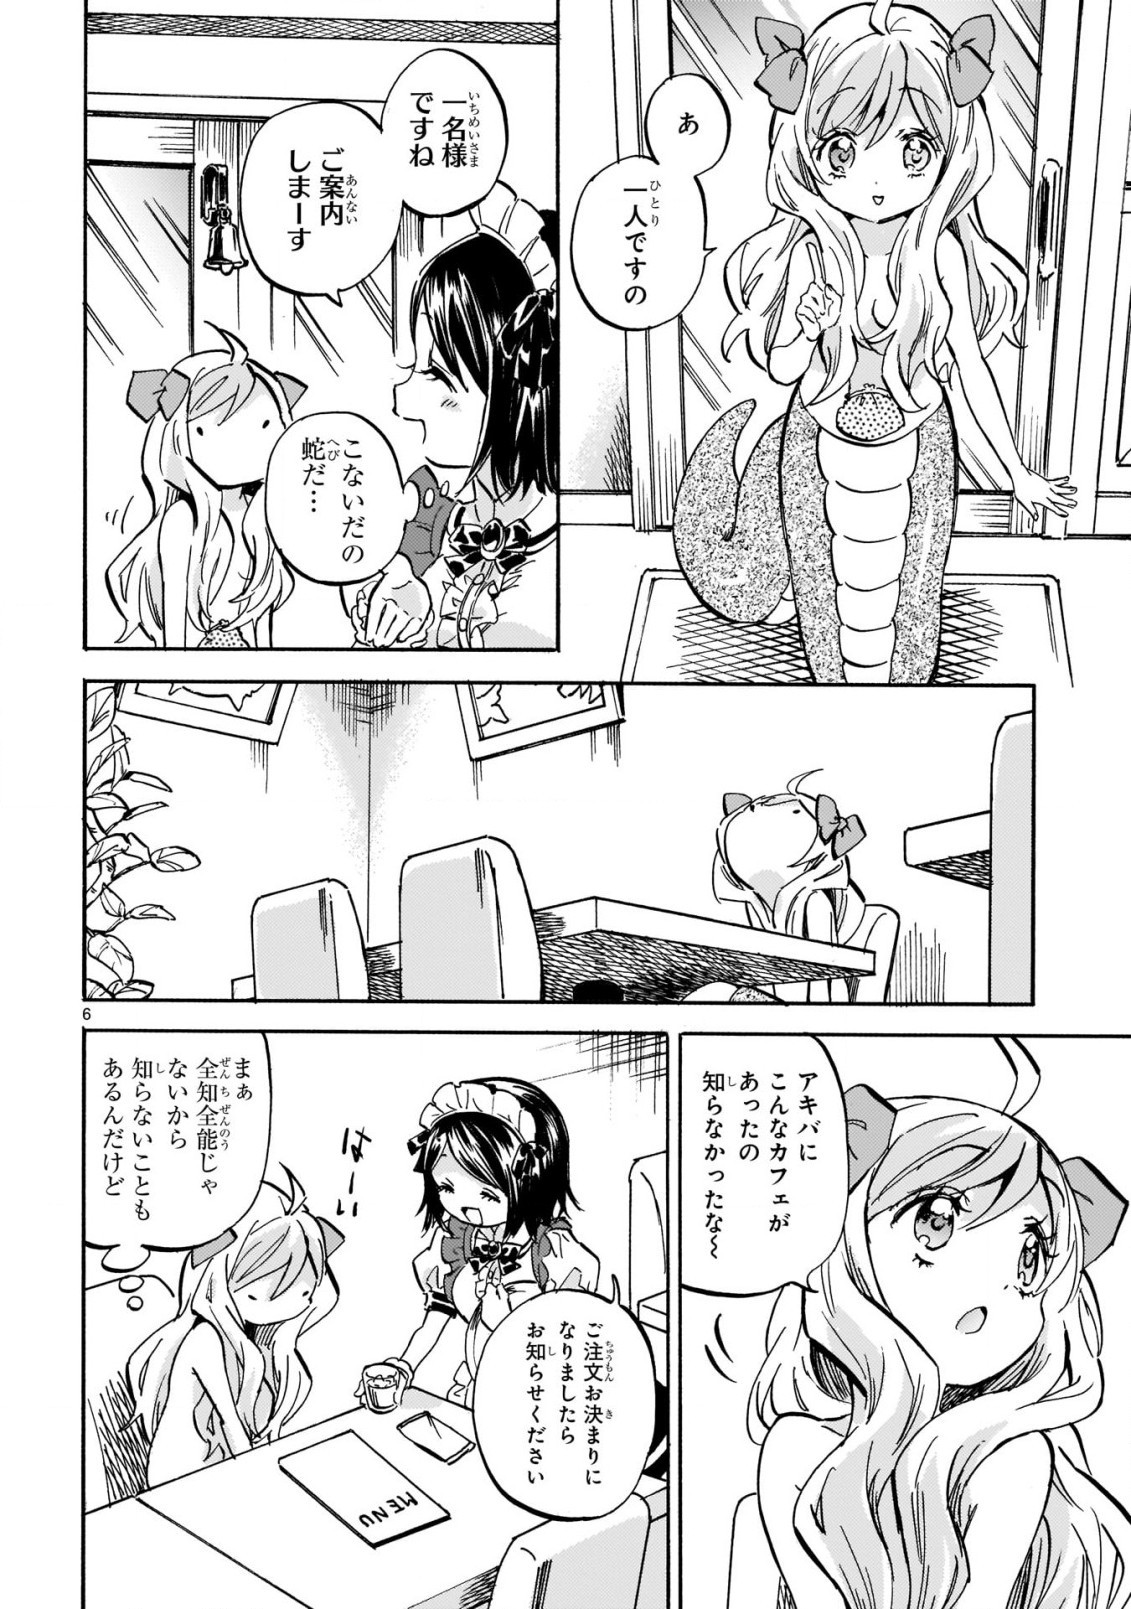 Jashin-chan Dropkick - Chapter 213 - Page 7